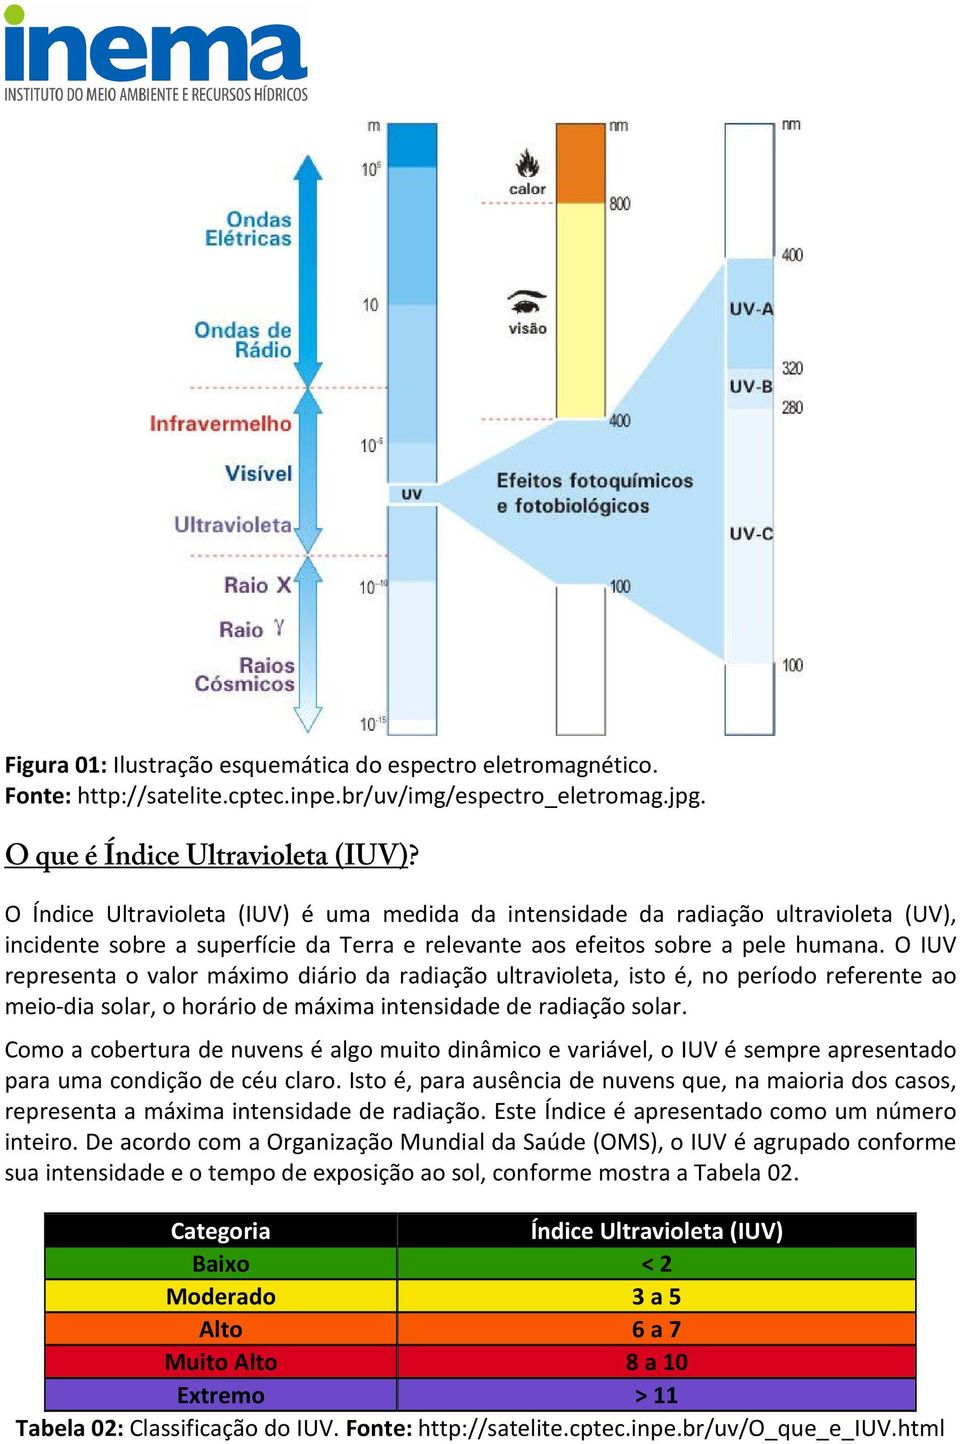 O IUV representa o valor máximo diário da radiação ultravioleta, isto é, no período referente ao meio-dia solar, o horário de máxima intensidade de radiação solar.